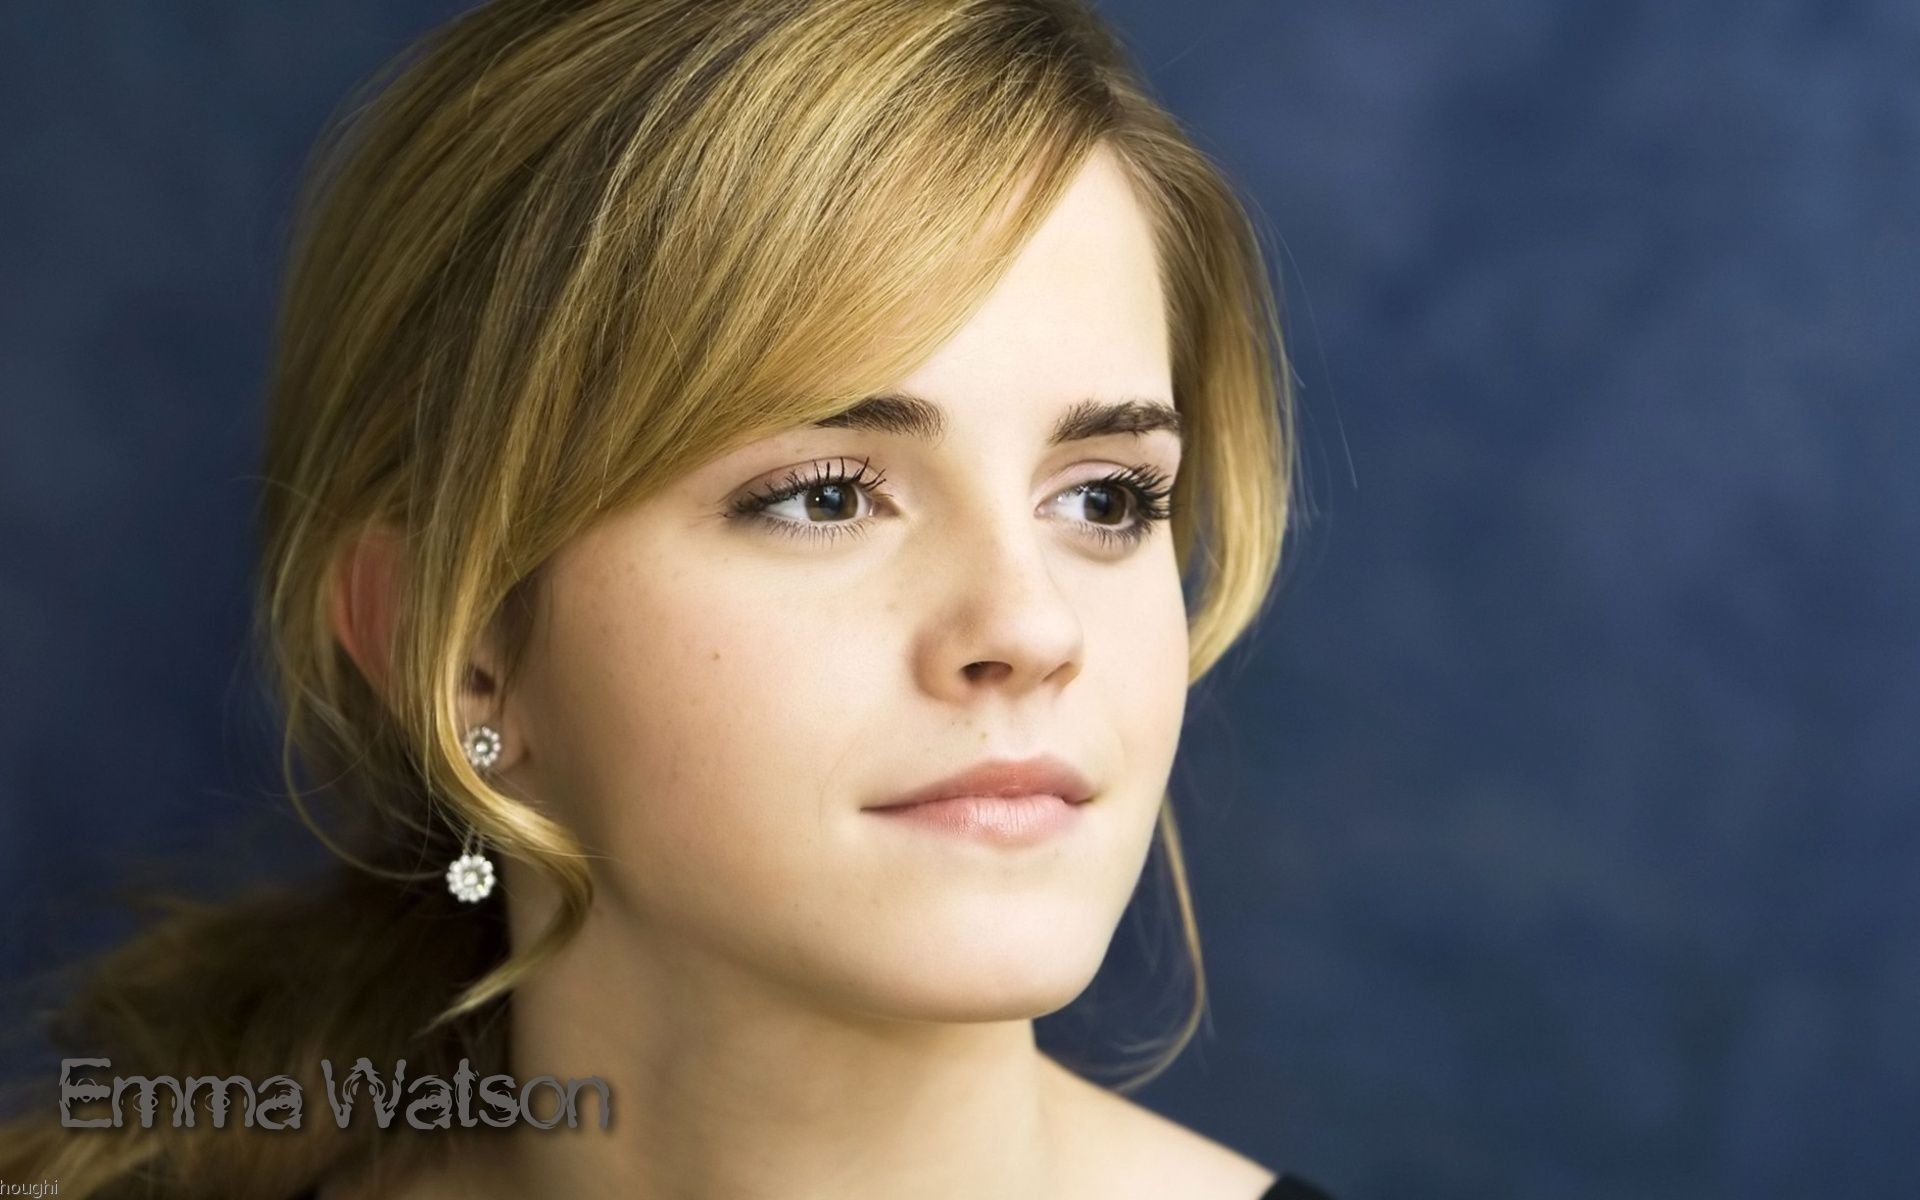 Emma Watson 艾玛·沃特森 美女壁纸7 - 1920x1200